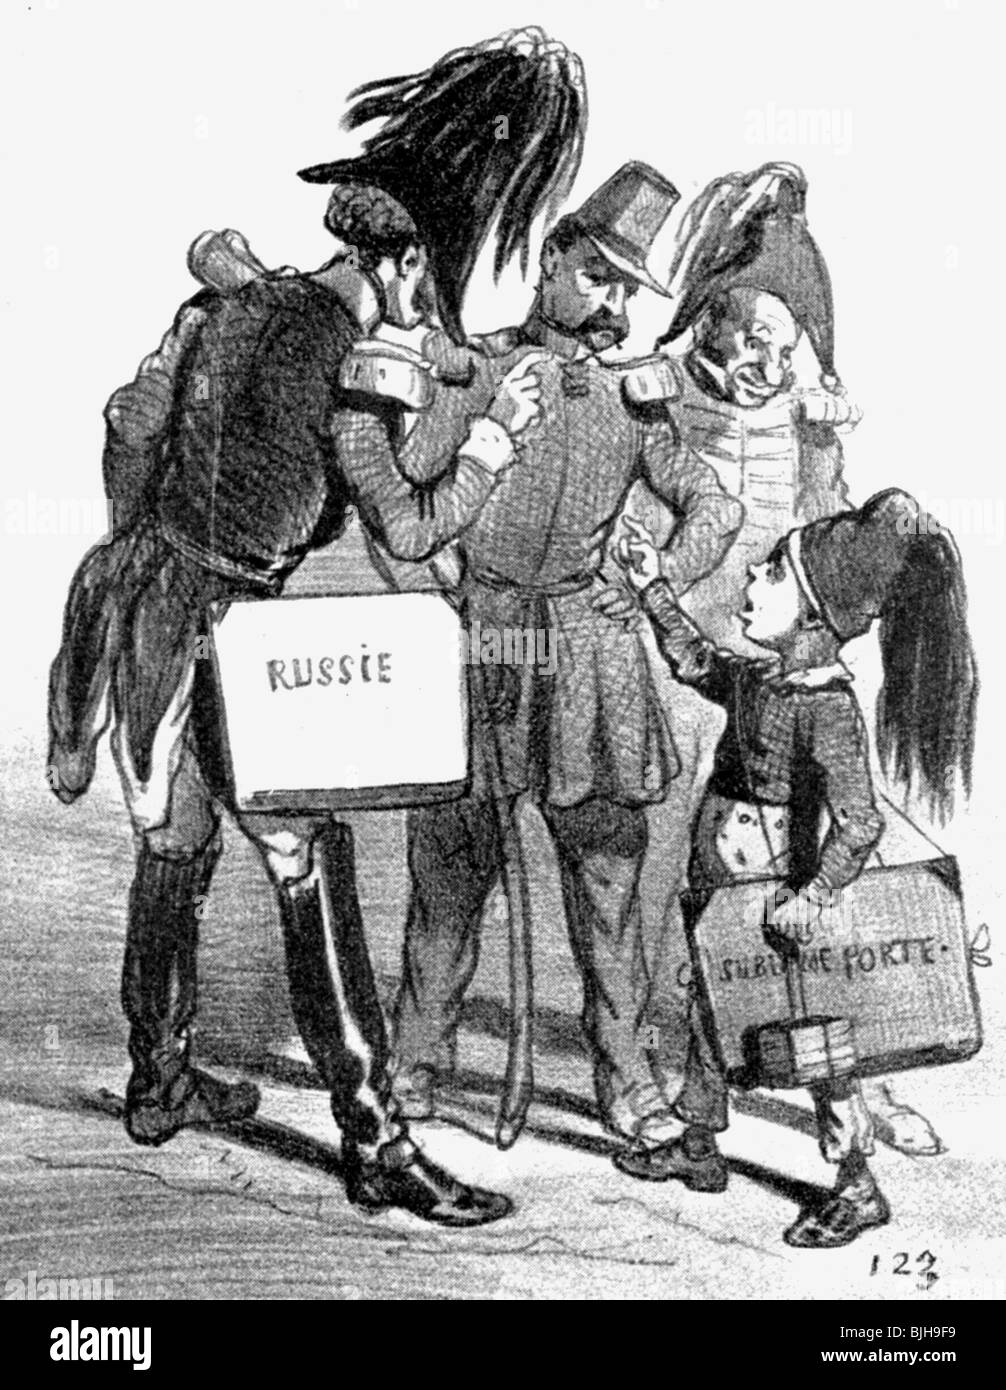 Nicholas i Pavlovich, 6.7.1796 - 2.3.1855, Kaiser von Russland 19.11.182 - 2.3.1855, Karikatur, "Streit über die politische Schule", Zeichnung von Cham, Frankreich, um das Jahr 1854, Stockfoto